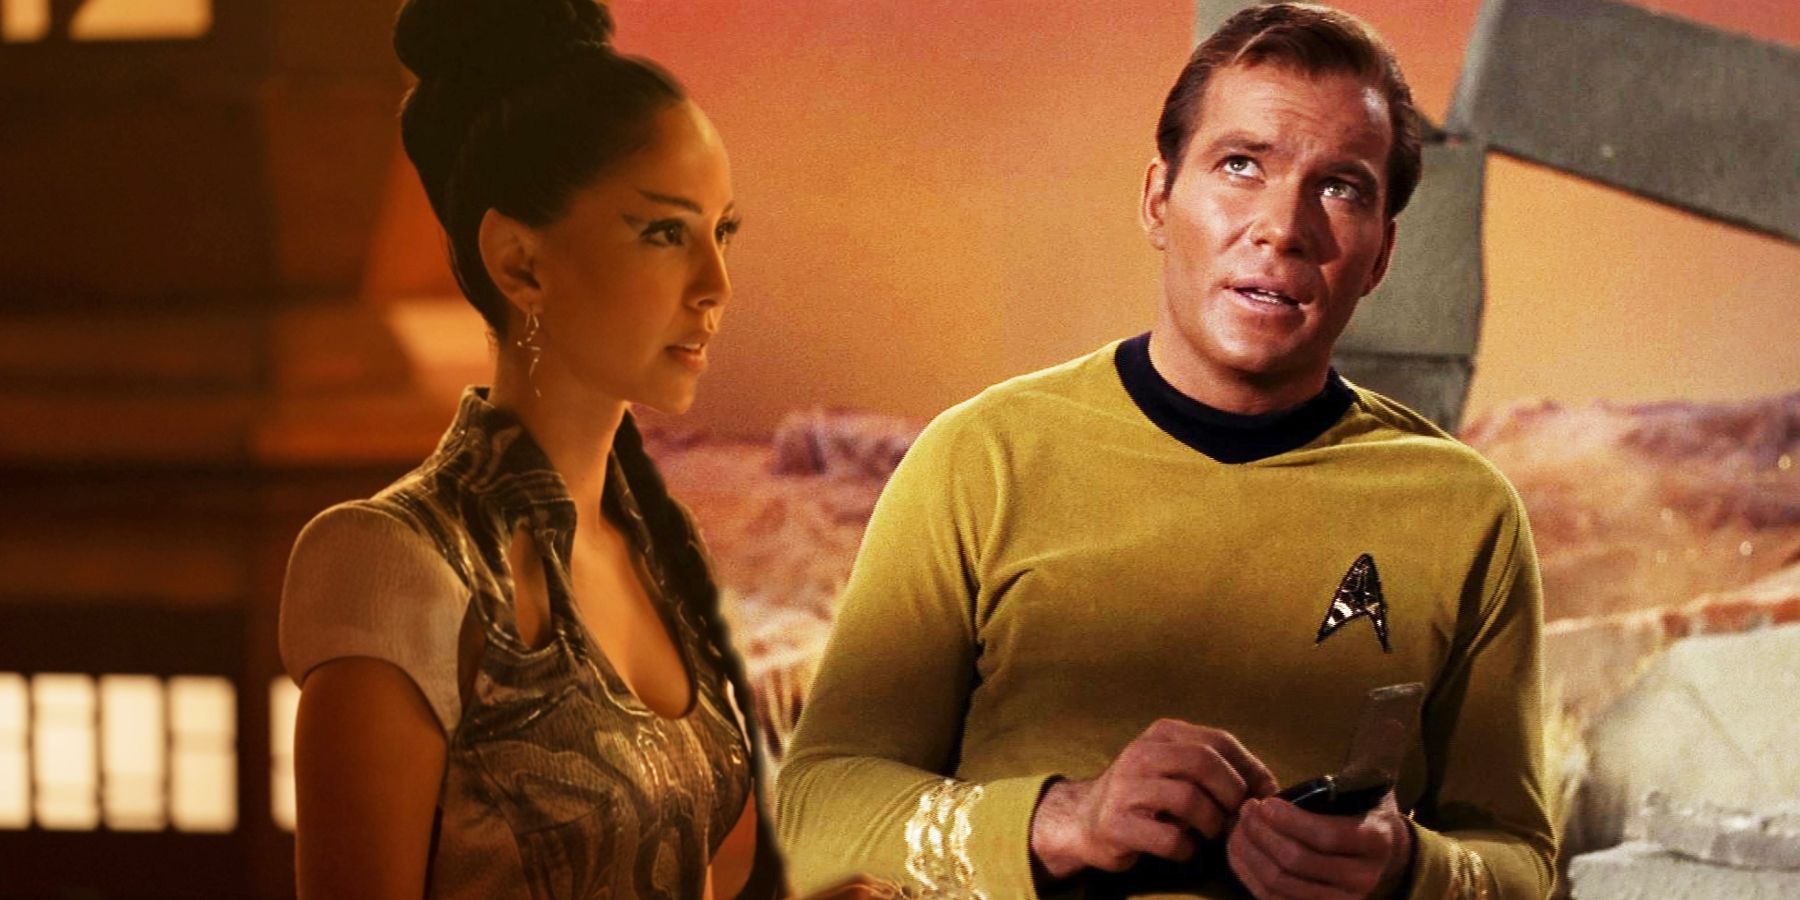 Gia Sandhu as Tpring and William Shatner as Kirk in Star Trek